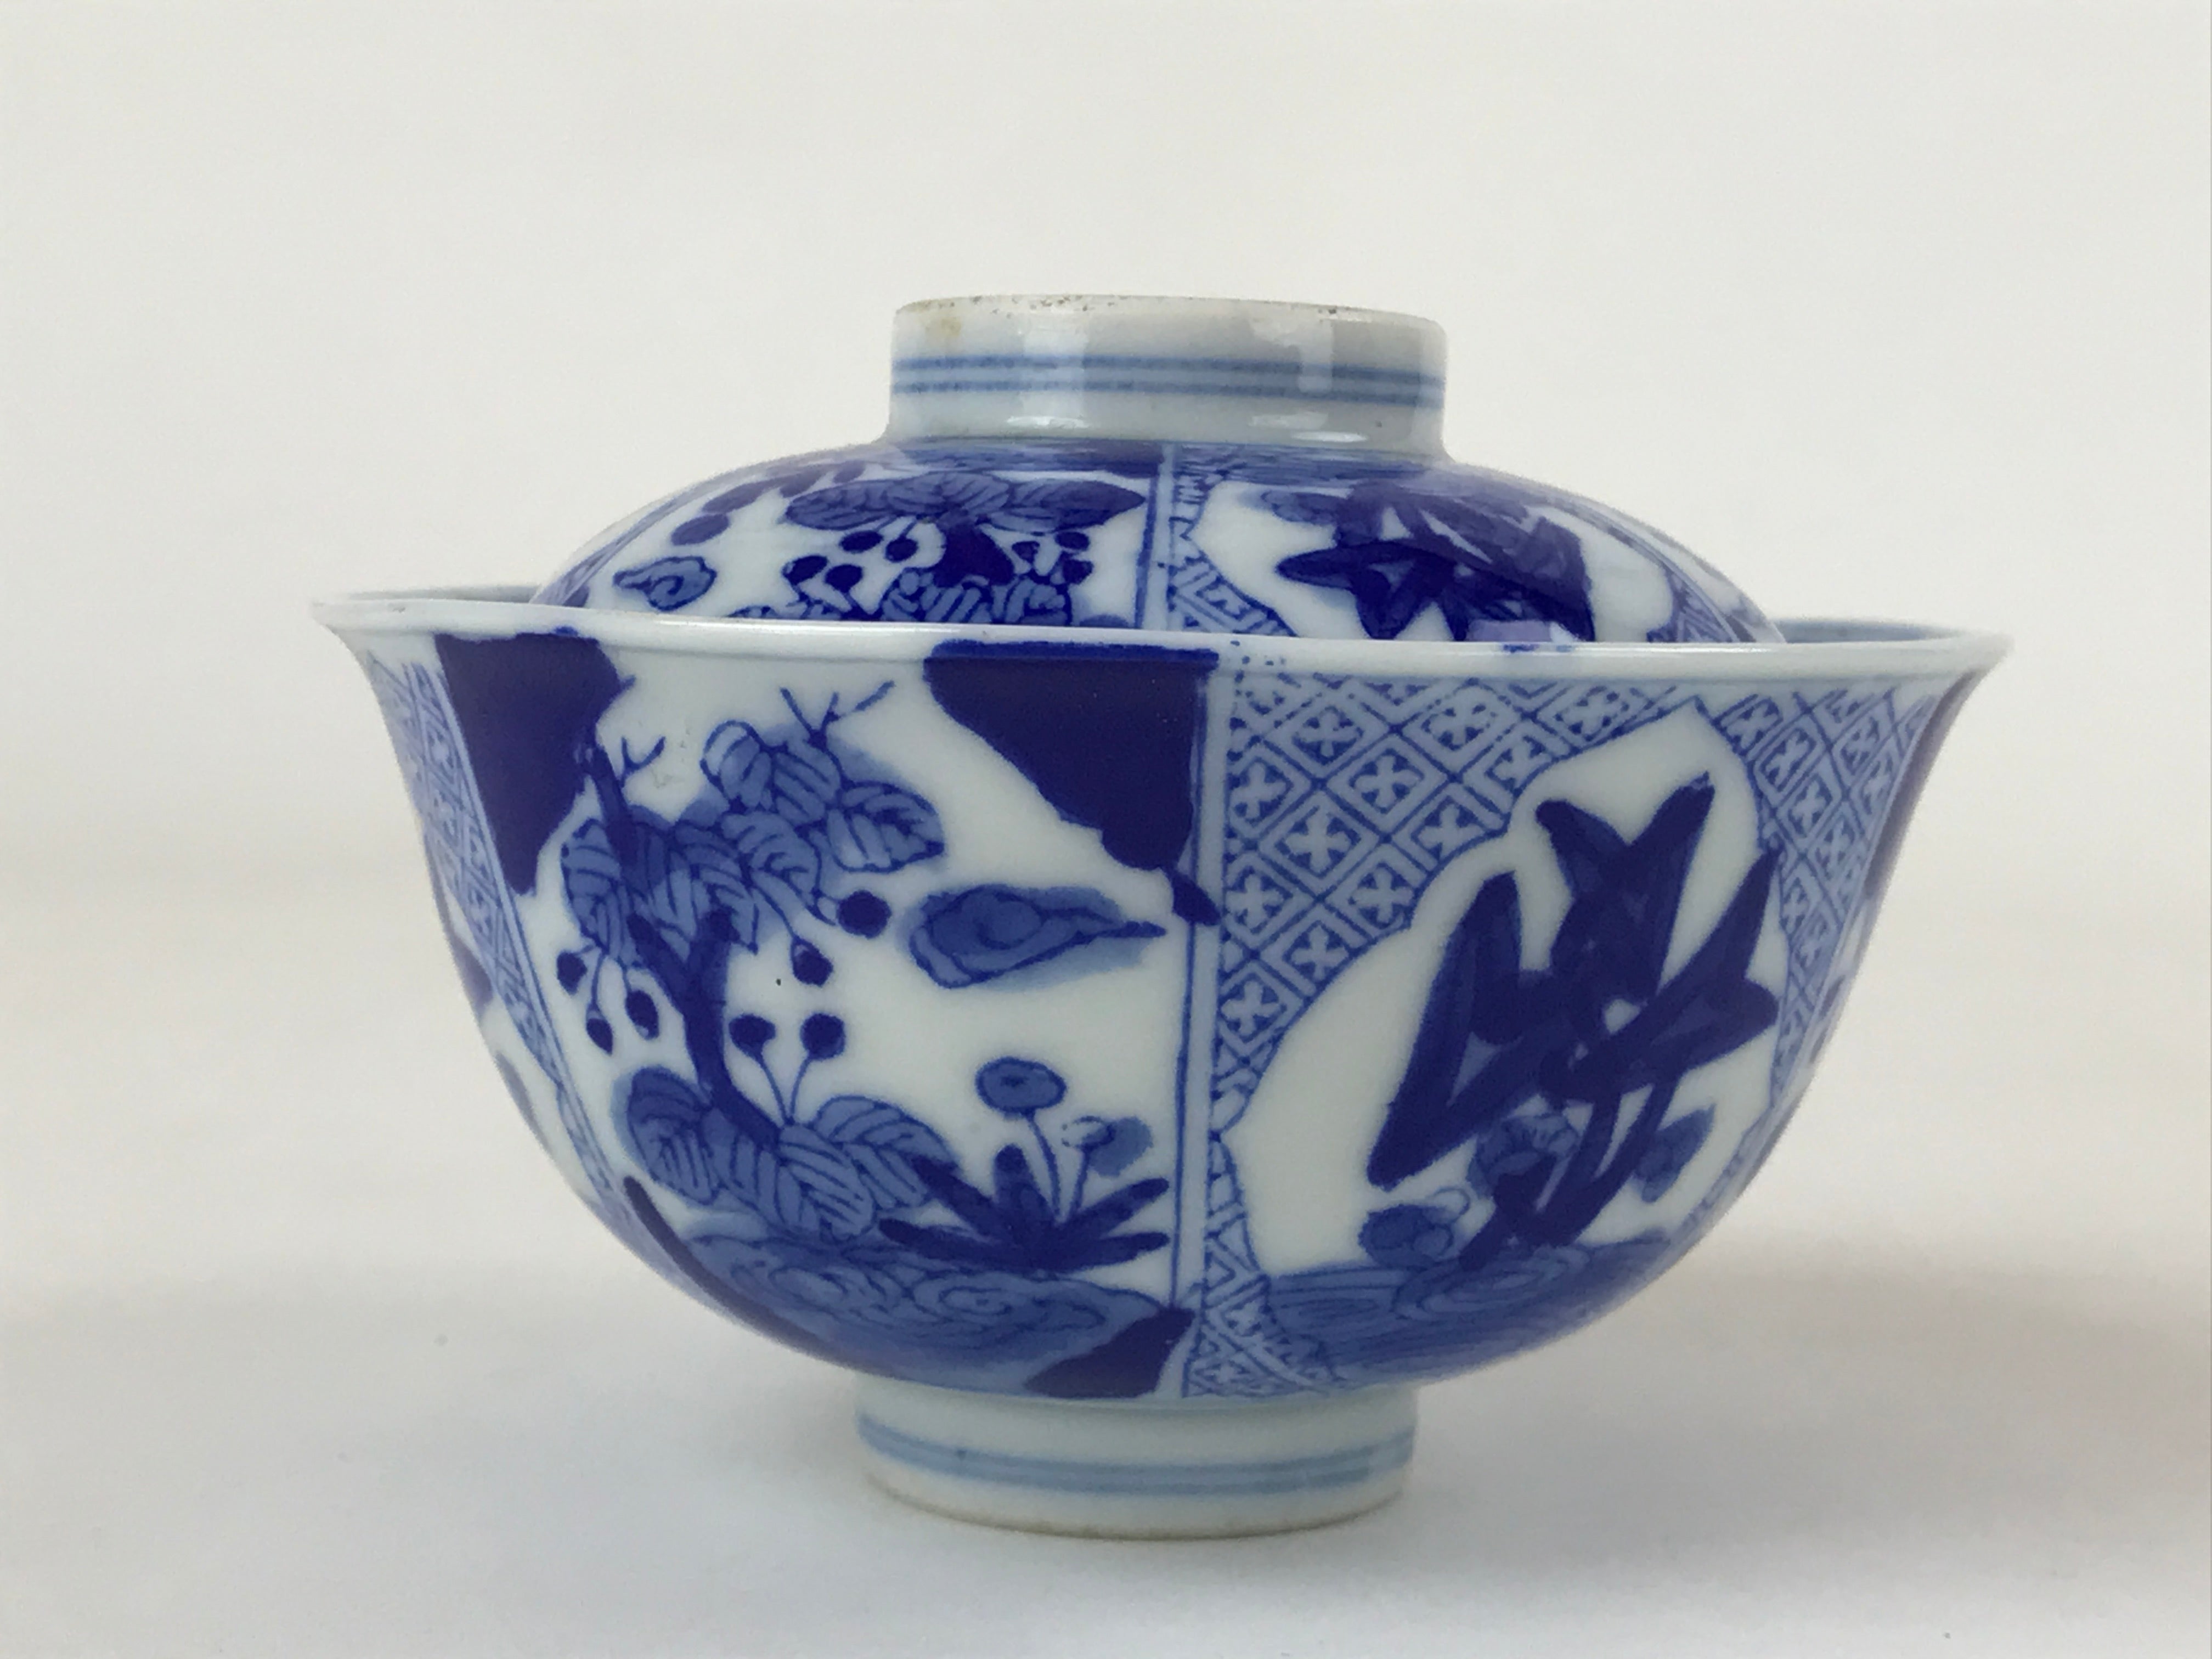 Japanese Ceramic Sometsuke Lidded Bowl Owan Vtg Pottery White Blue Floral PY582